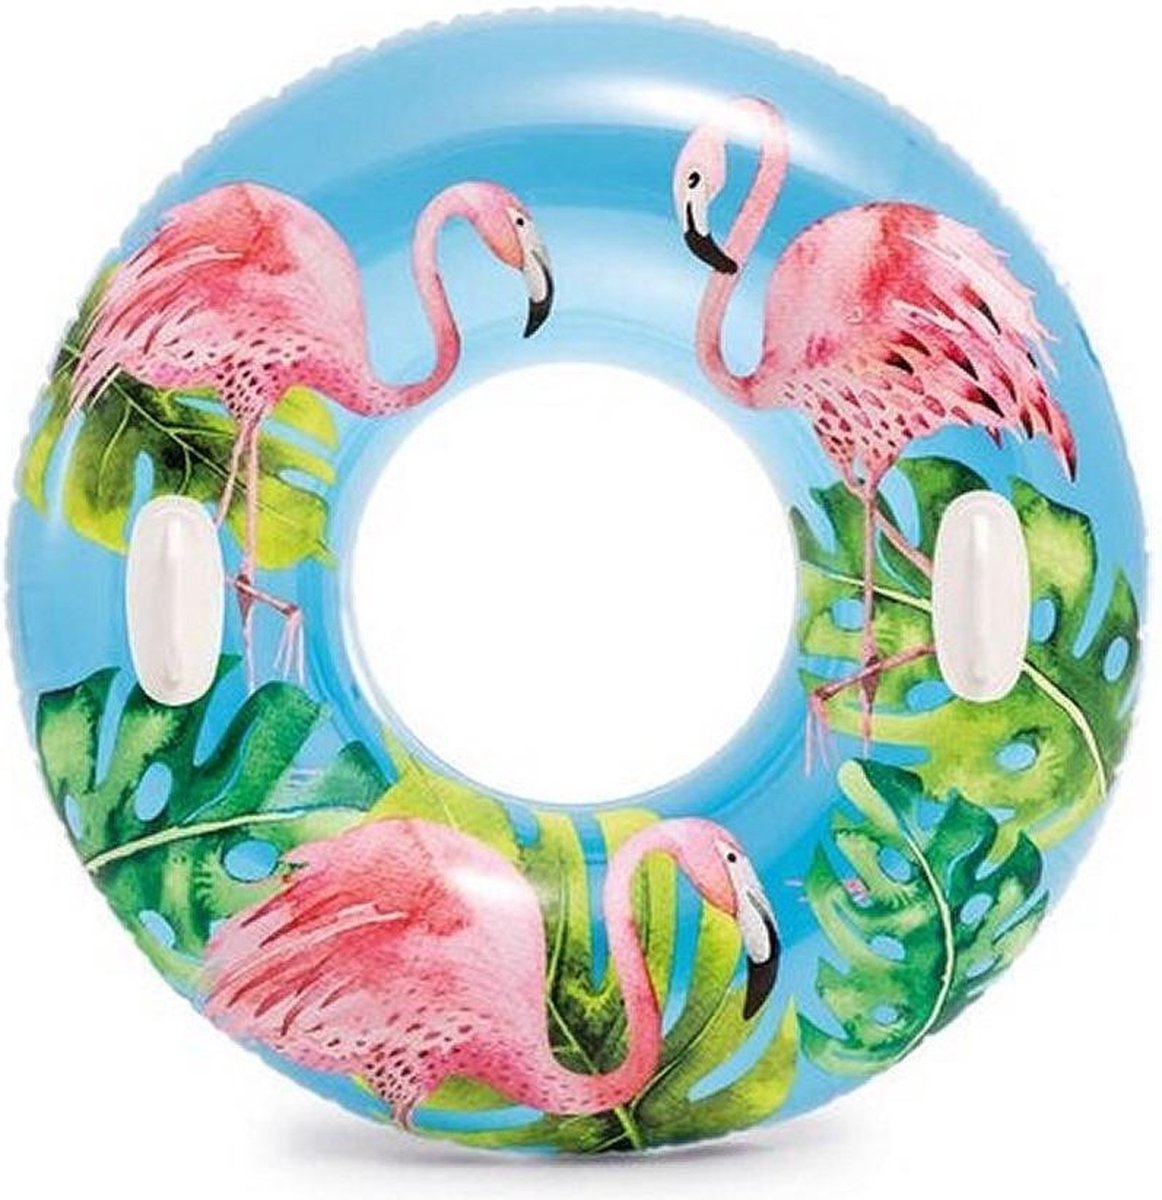 Opblaasbare blauwe flamingo zwemband/zwemring 97 cm - Zwembenodigdheden - Zwemringen - Tropisch thema - Flamingo zwembanden voor kinderen en volwassenen